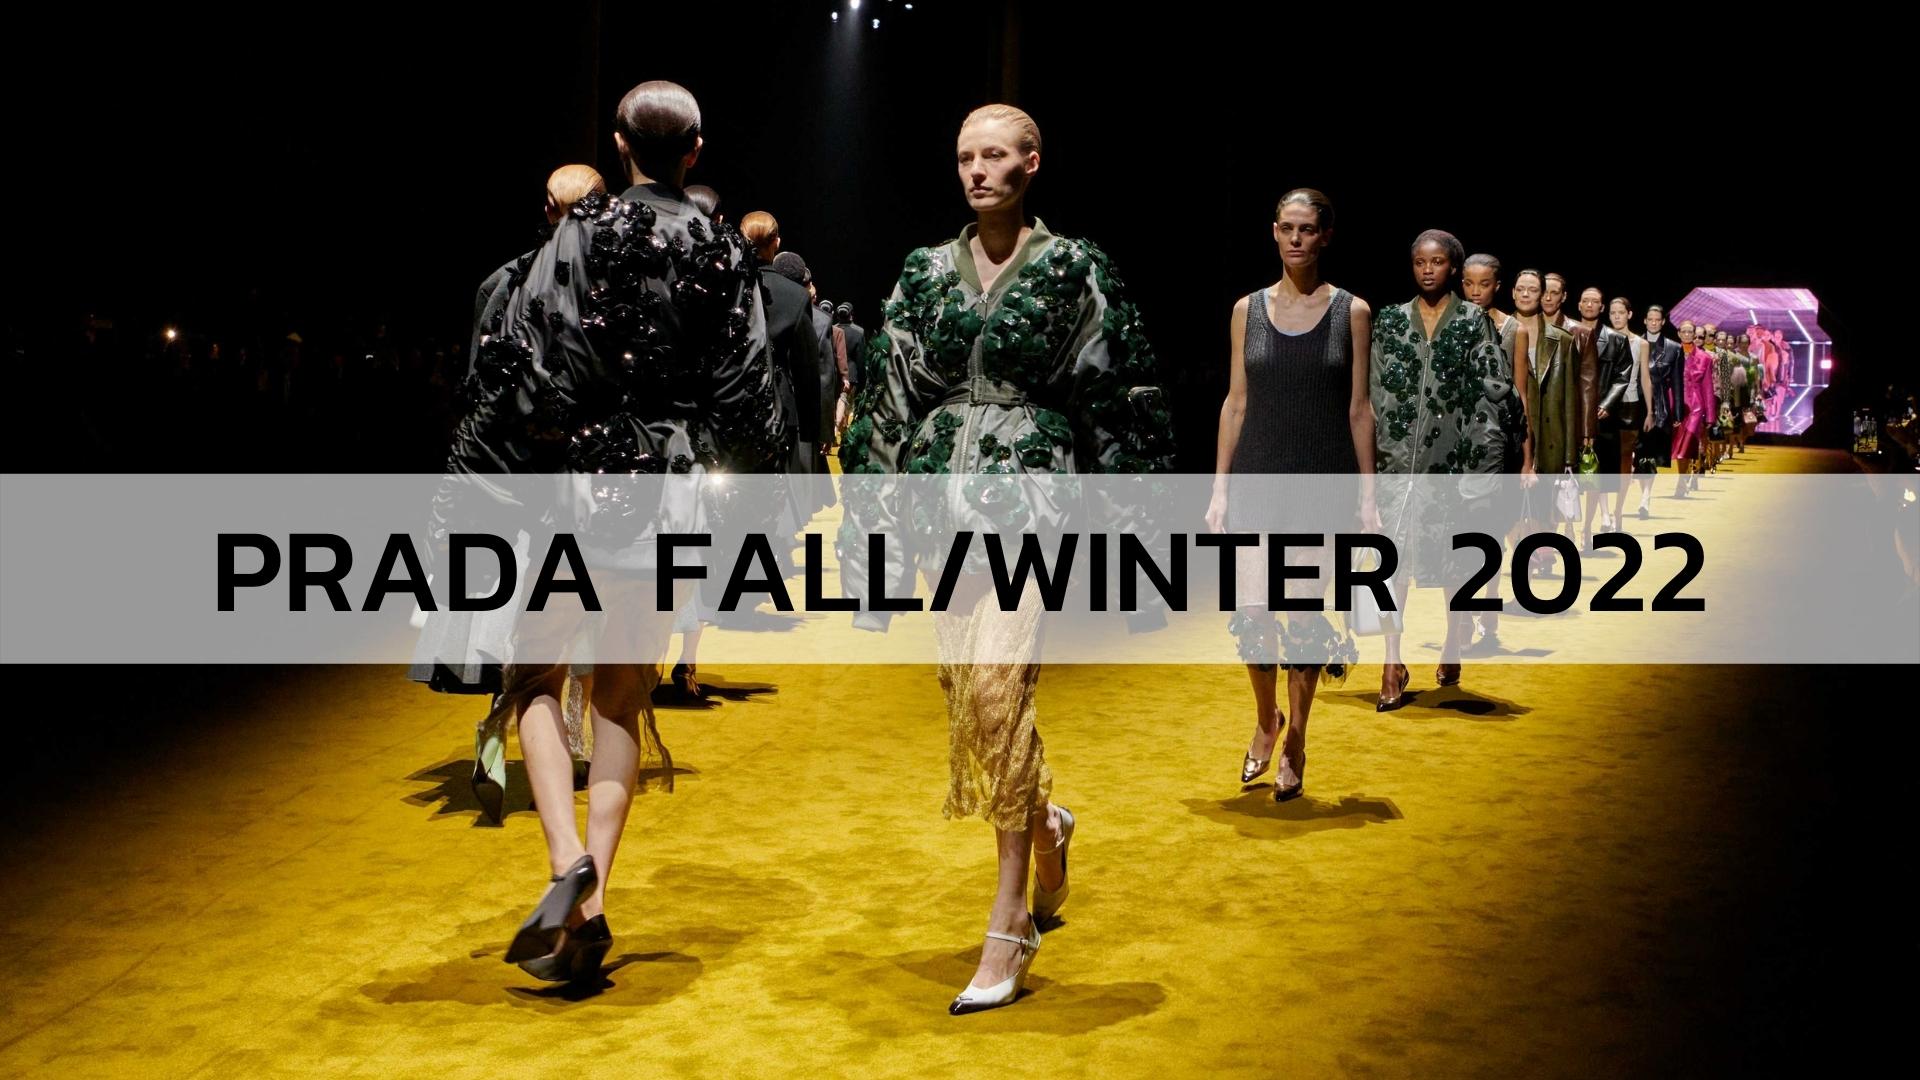 Prada Fall/Winter 2022